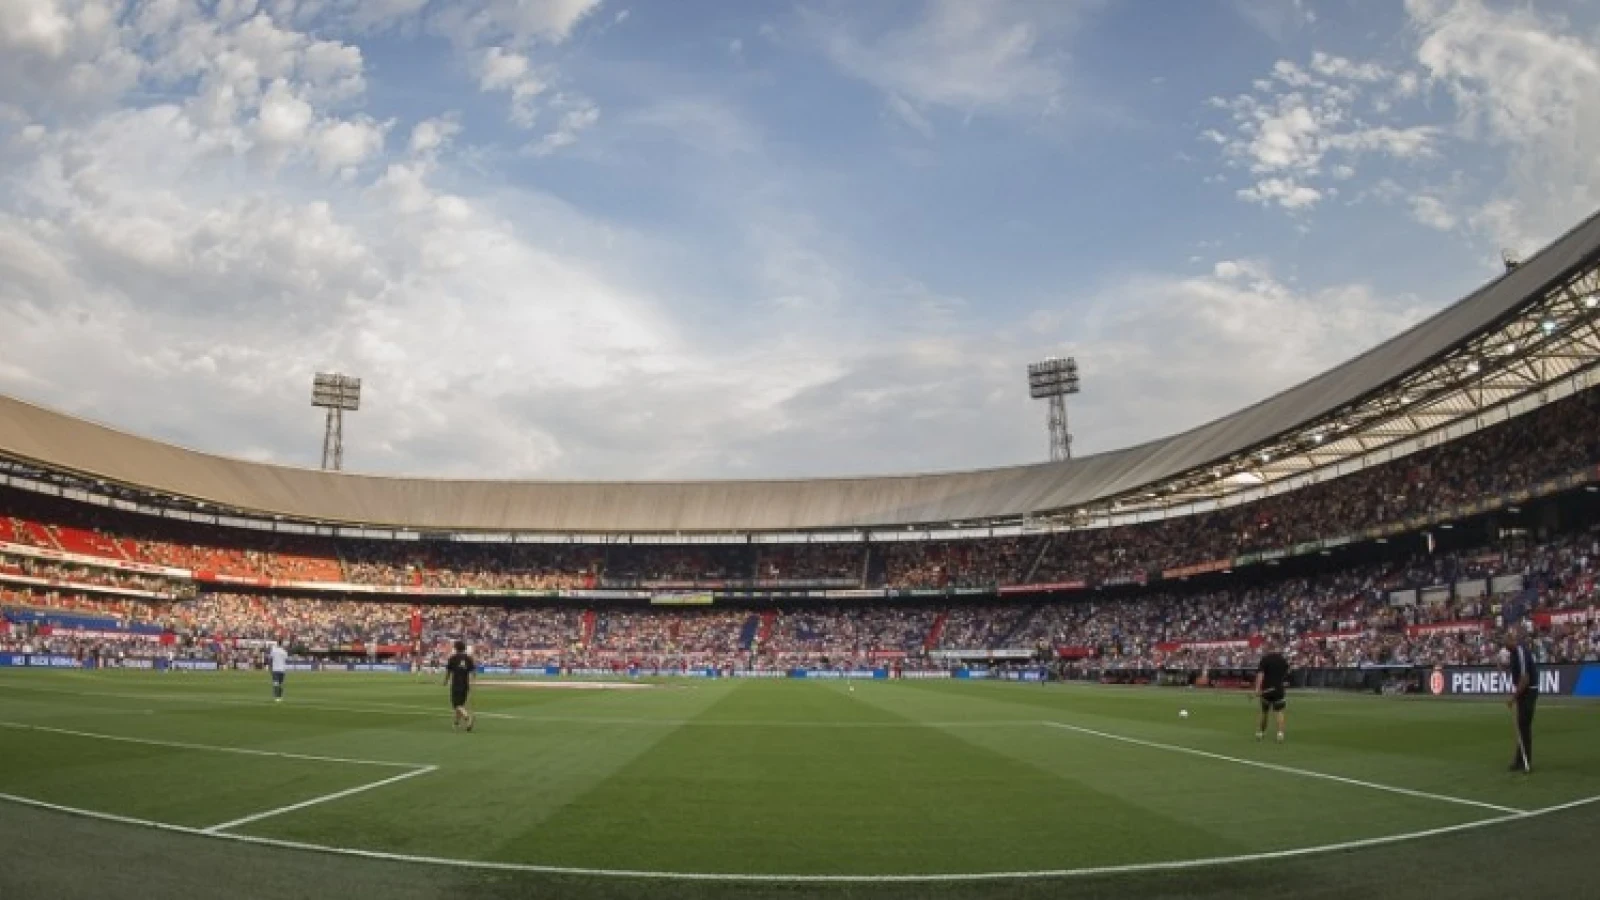 VIDEO | Unieke beelden van Feyenoord - Excelsior in 360 graden 